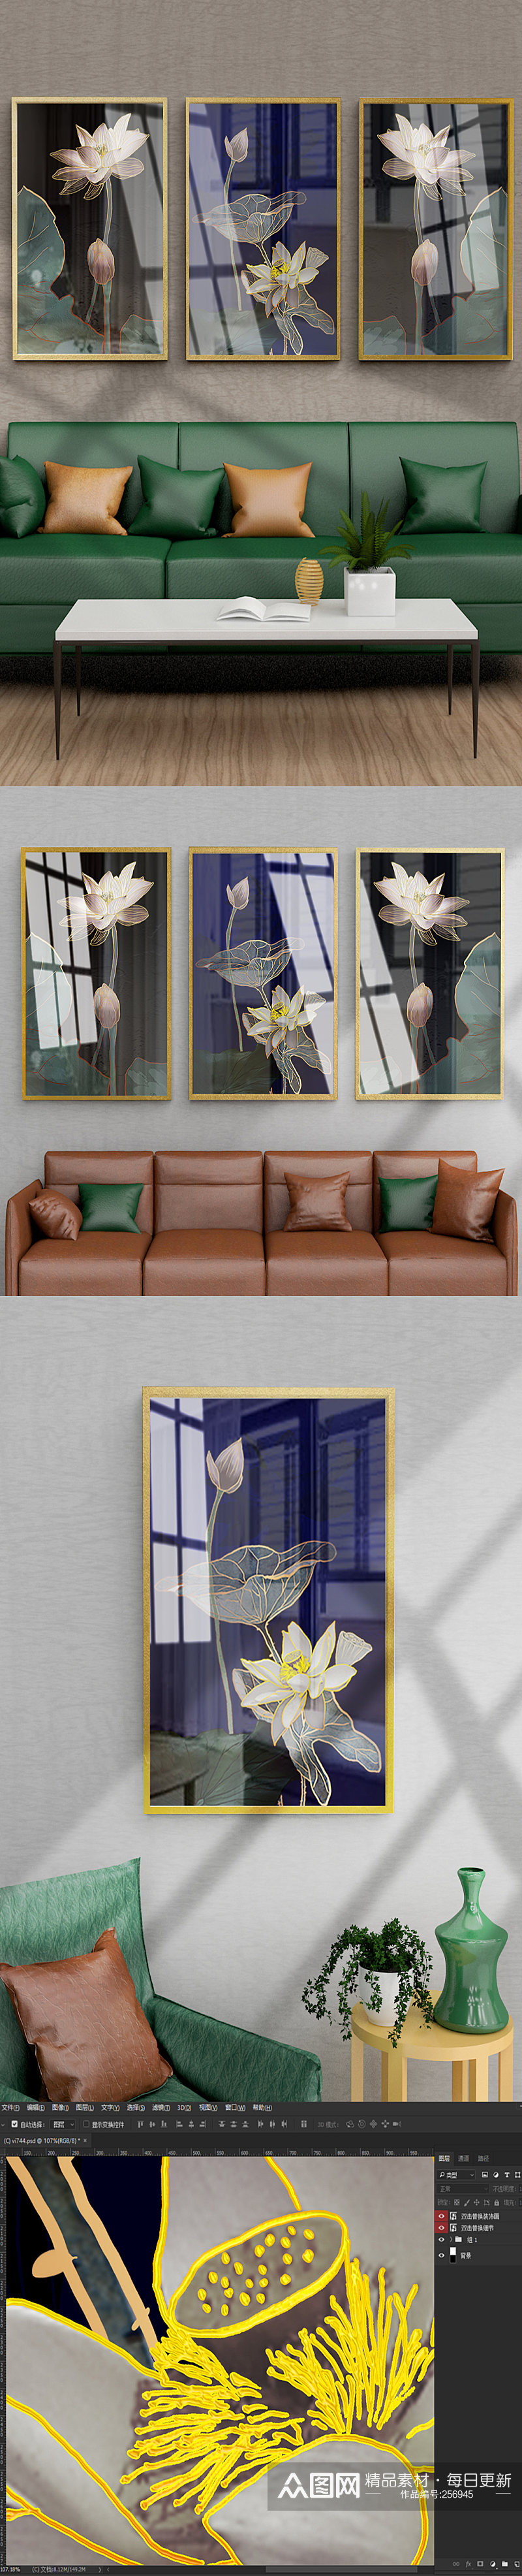 烁金水面荷花客厅沙发背景墙装饰画三联画素材